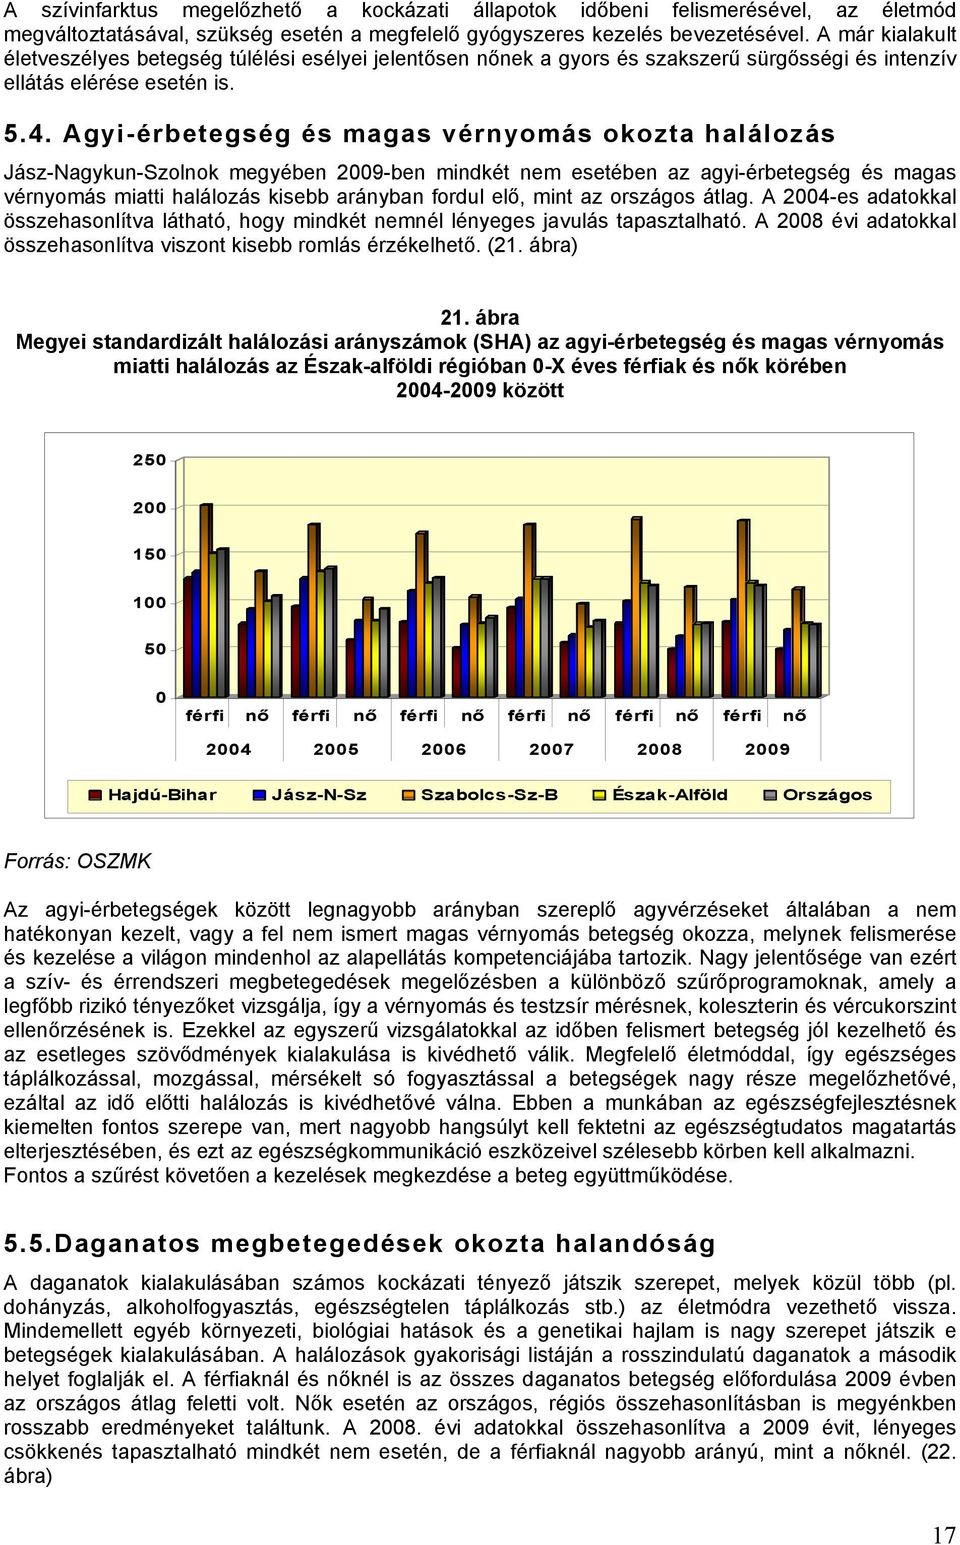 Agyi-érbetegség és magas vérnyomás okozta halálozás Jász-Nagykun-Szolnok megyében 2009-ben mindkét nem esetében az agyi-érbetegség és magas vérnyomás miatti halálozás kisebb arányban fordul elő, mint